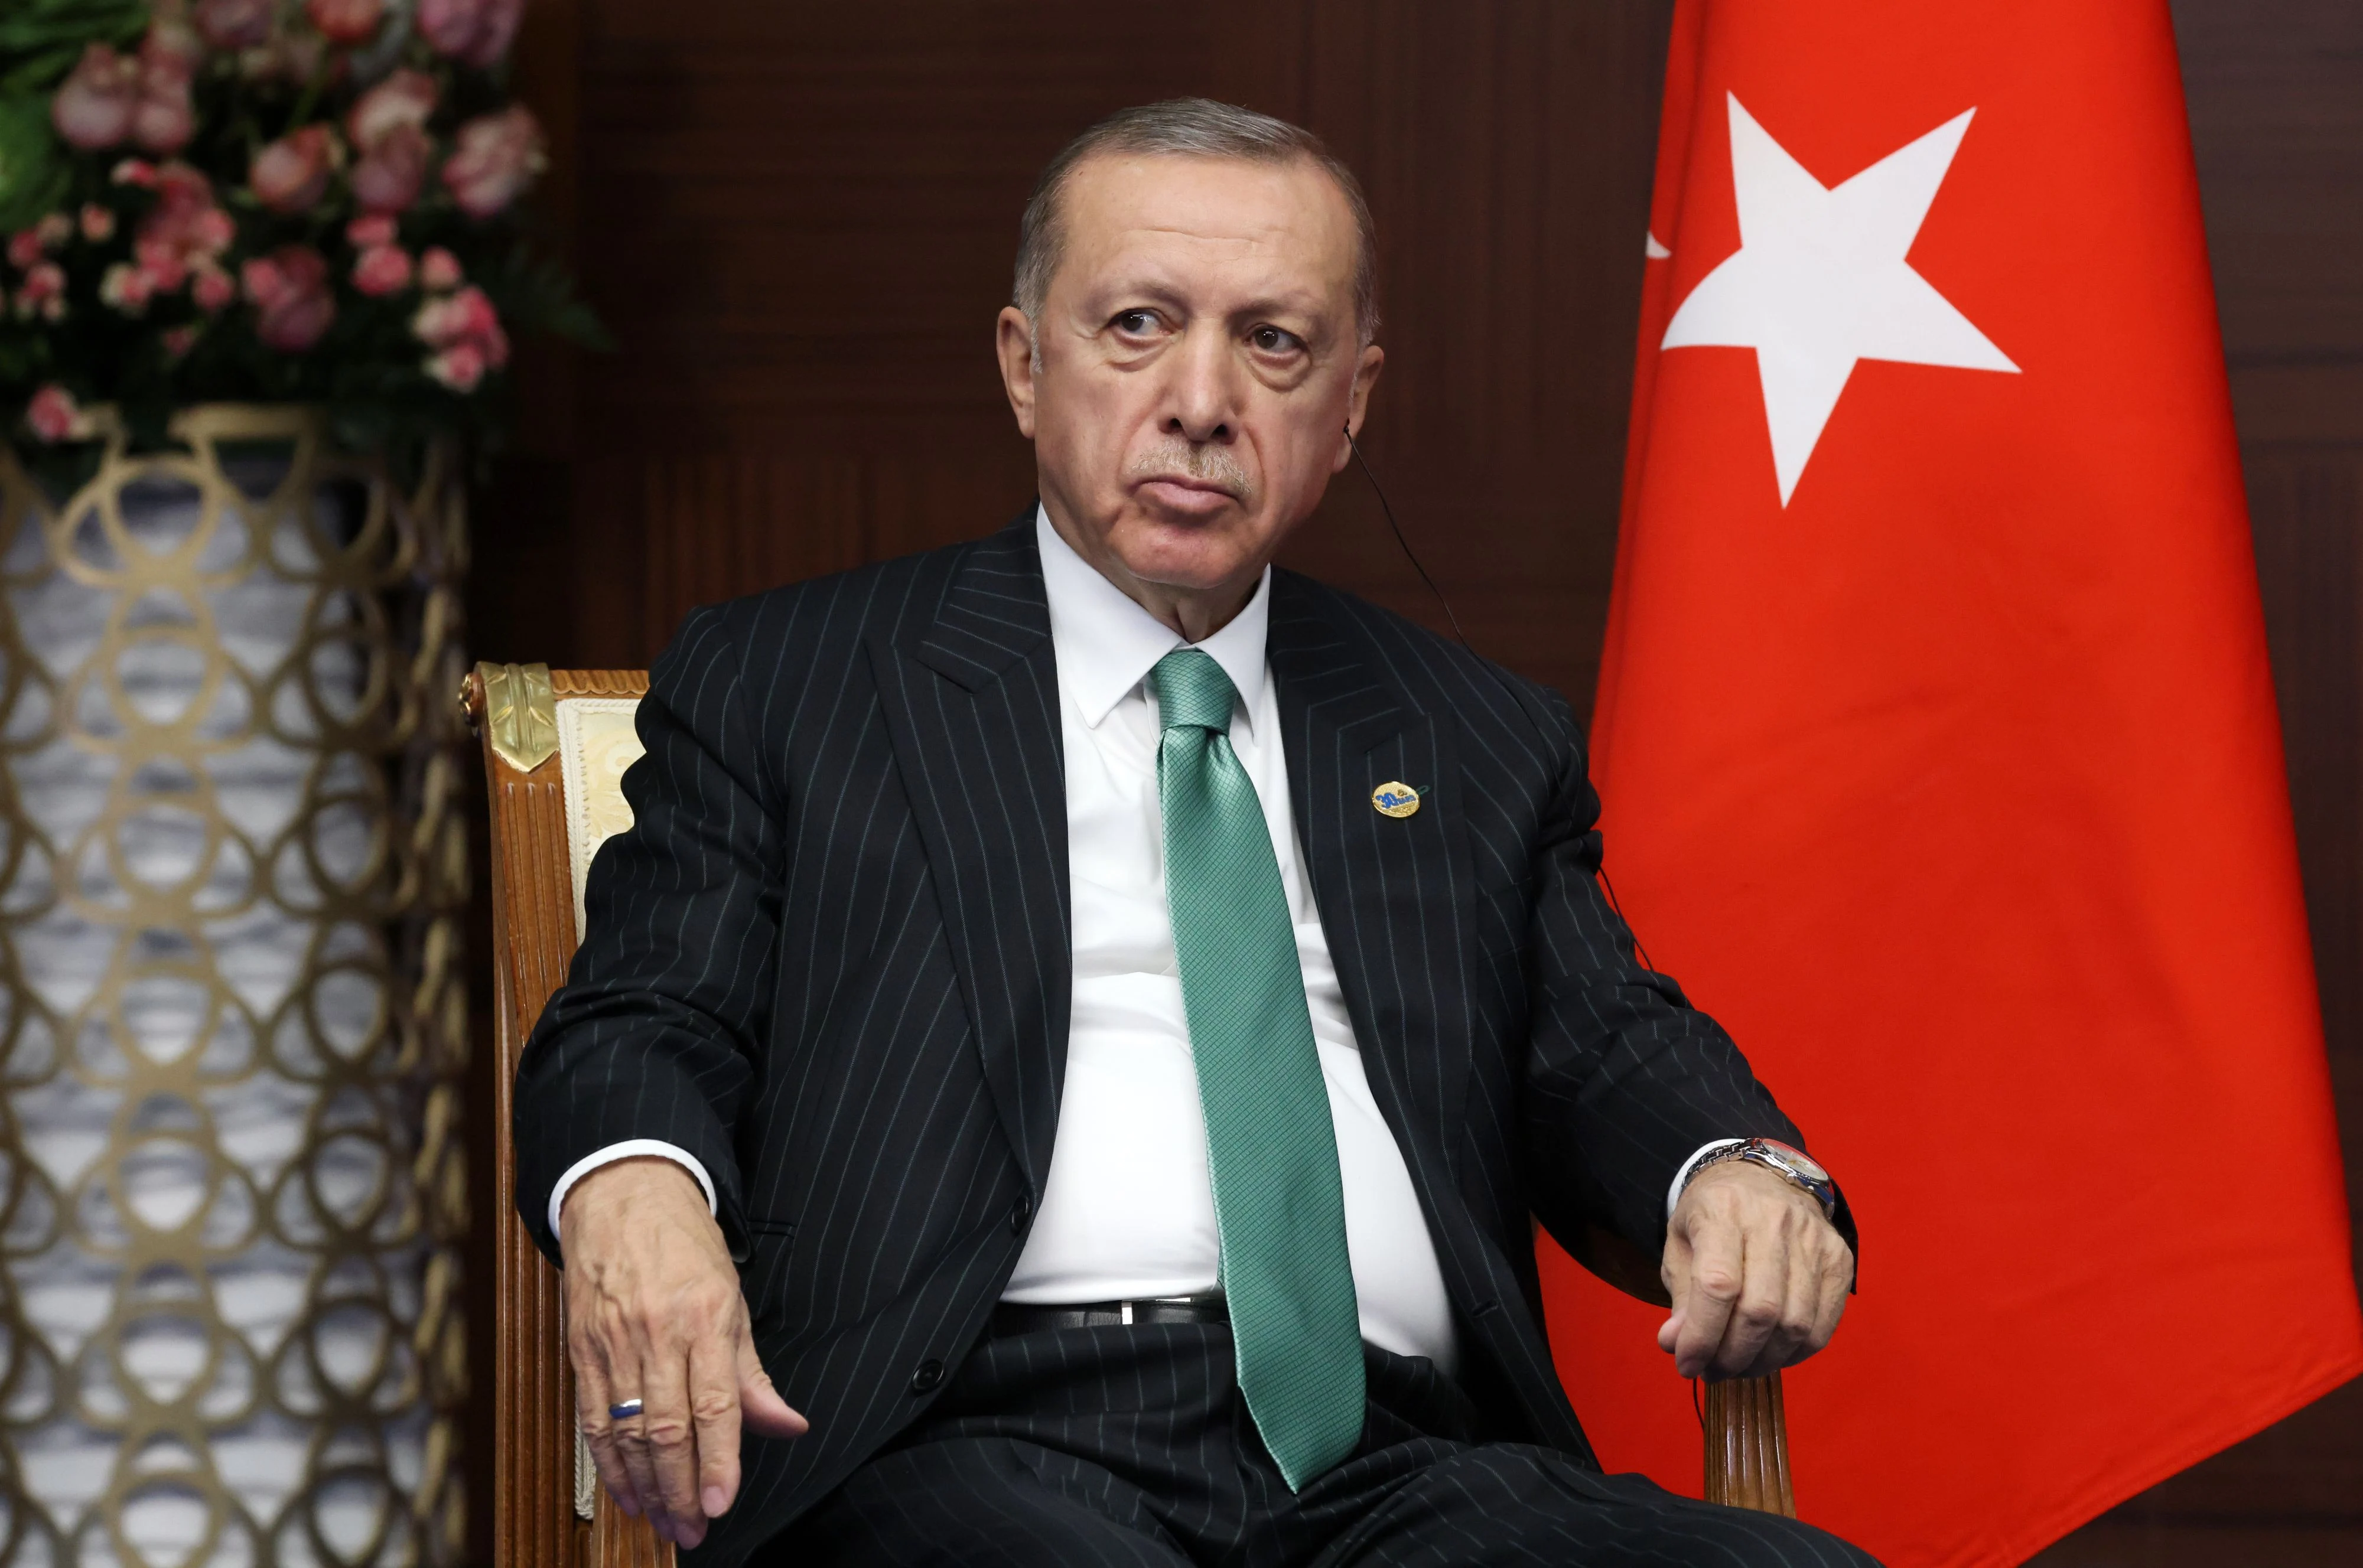 Recep Tayyip Erdoğan, președintele Turciei. Sursă foto: EPA-EFE